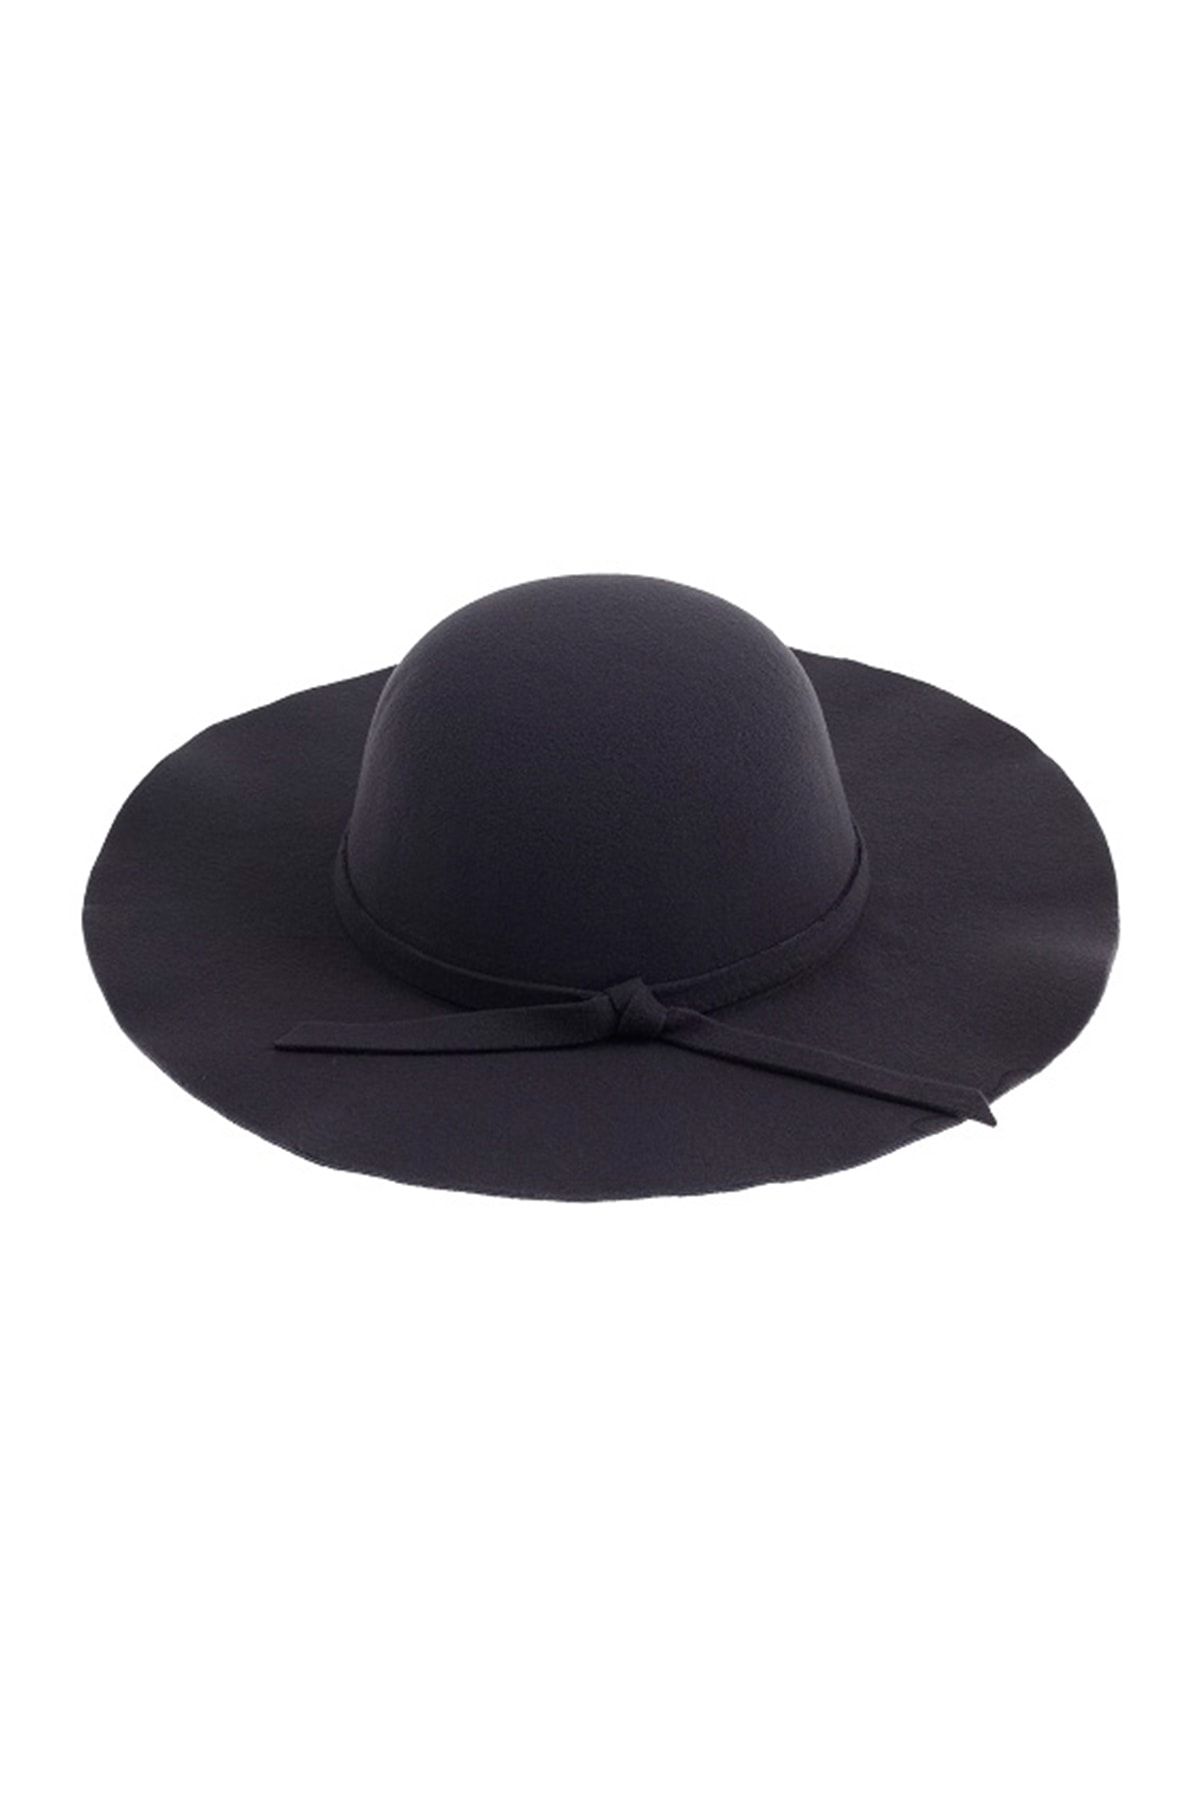 Bay Şapkacı Geniş Kenarlı Kaşe Siyah Fötr Şapka 7172